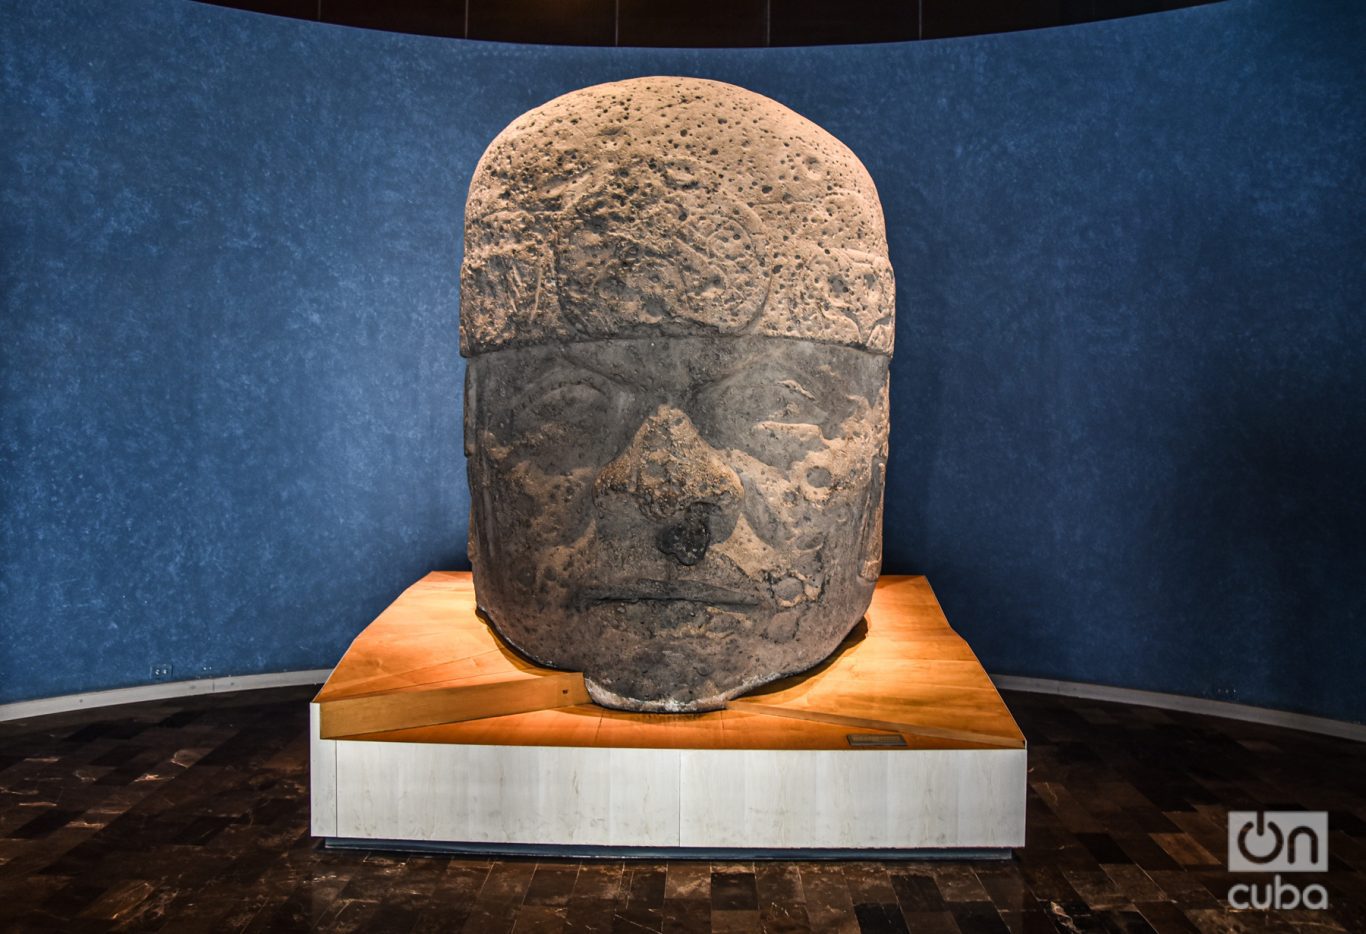 Una de las esculturas más emblemáticas de la cultura Olmeca es la cabeza colosal, símbolo central de su enfoque filosófico en torno al hombre. De las 17 cabezas descubiertas, esta representa una de ellas, datan del periodo preclásico medio (1200-600 a.C.). Se exhibe en la sala de Culturas de la Costa del Golfo. Foto: Kaloian.